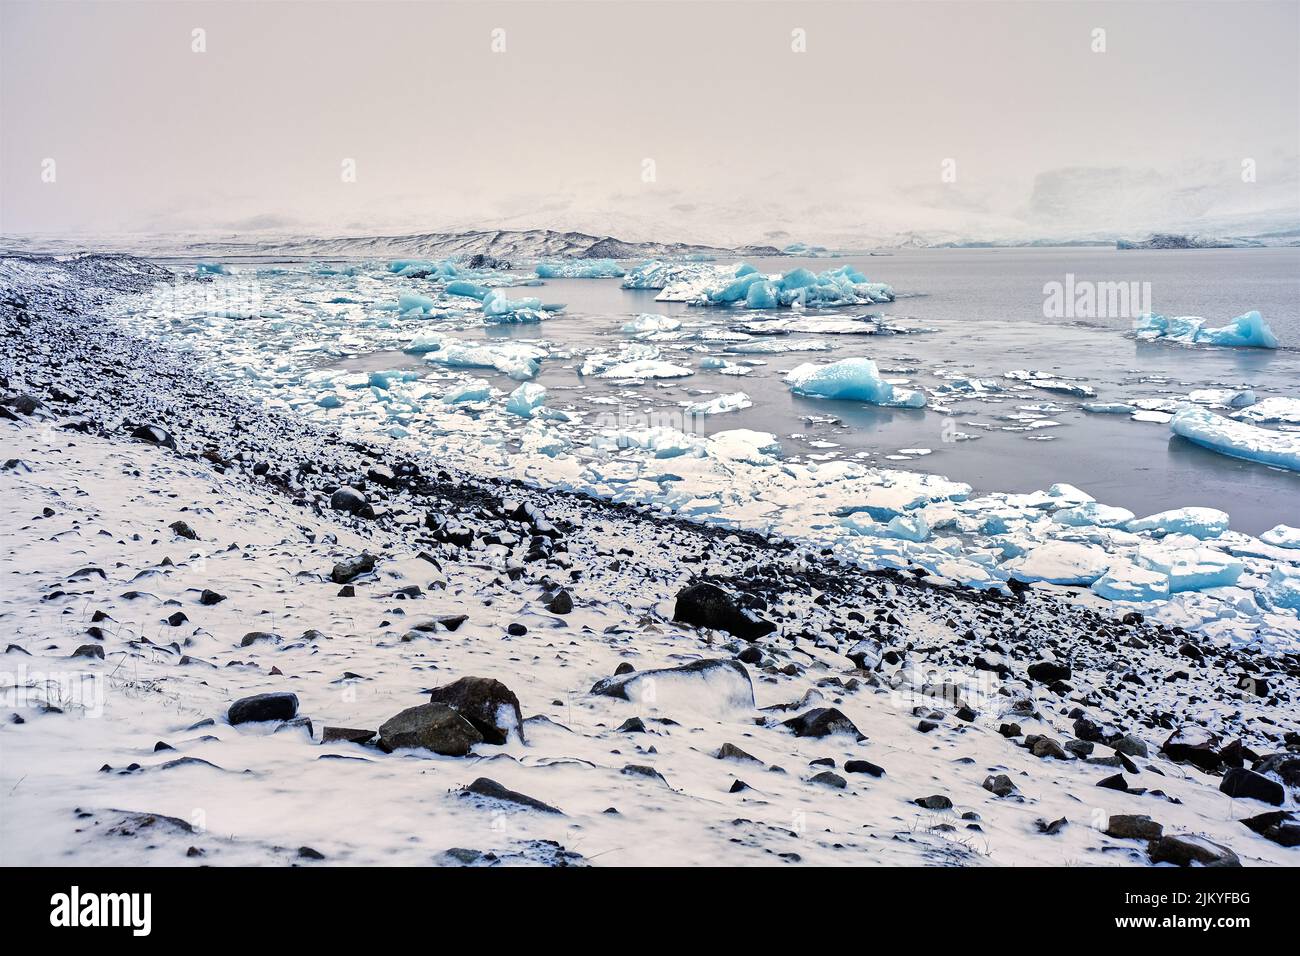 Vista grandangolare del Lago del Ghiacciaio Fjallsarlon, Islanda, con molti iceberg galleggianti Foto Stock